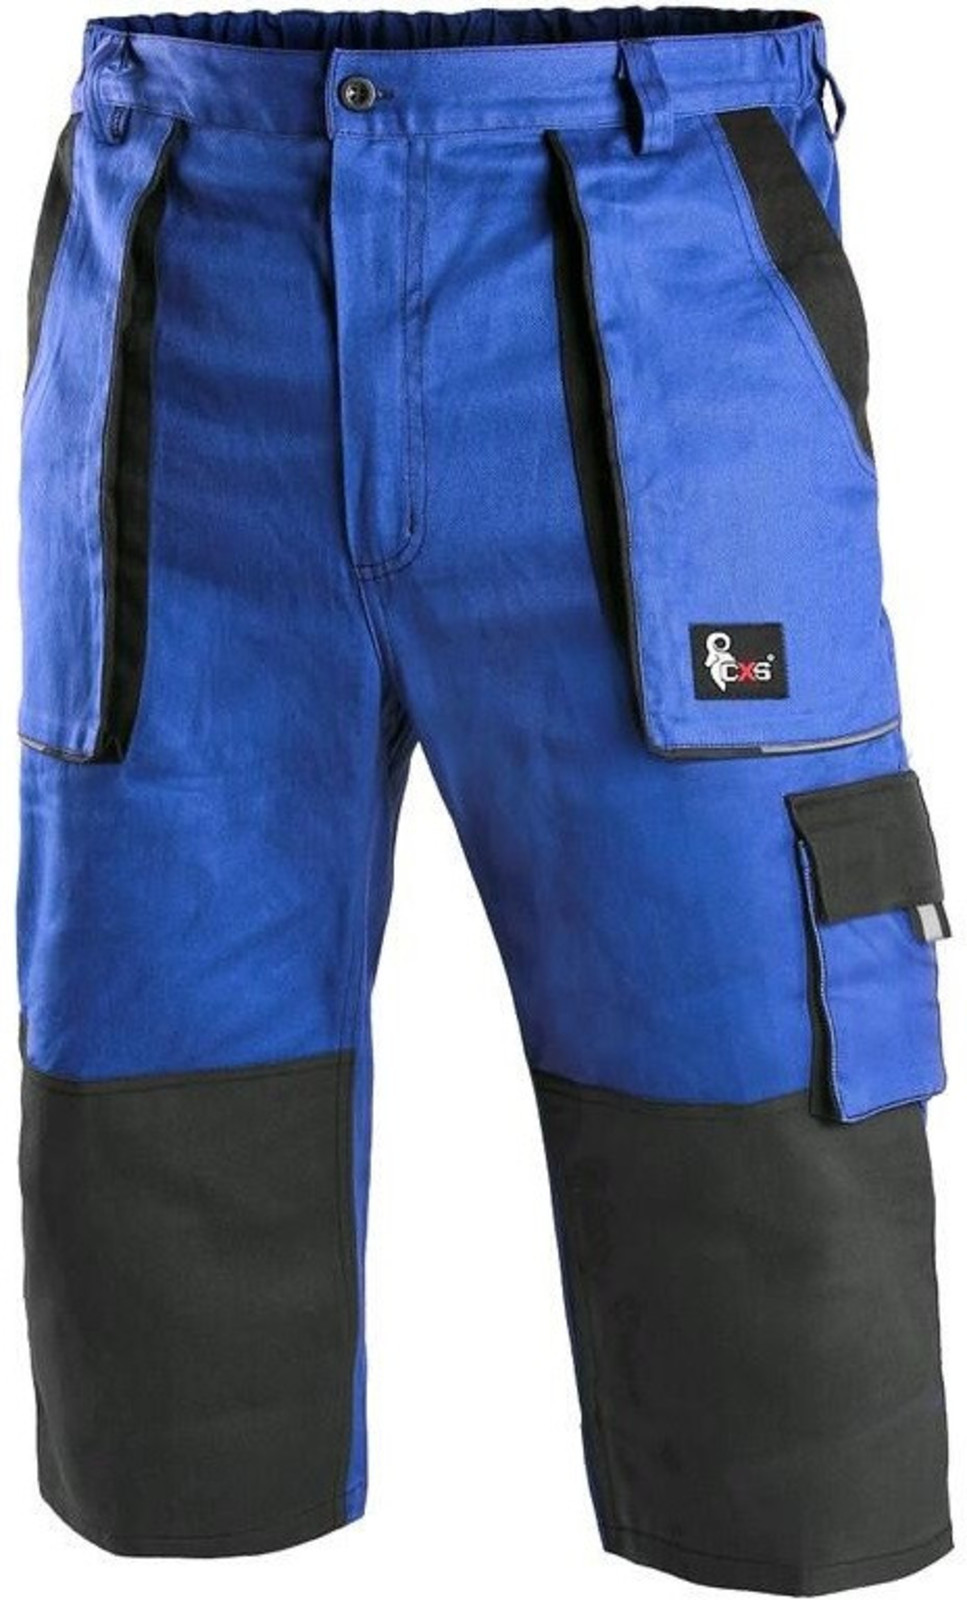 Pánske montérkové 3/4 nohavice CXS Luxy Patrik - veľkosť: 46, farba: modrá/čierna